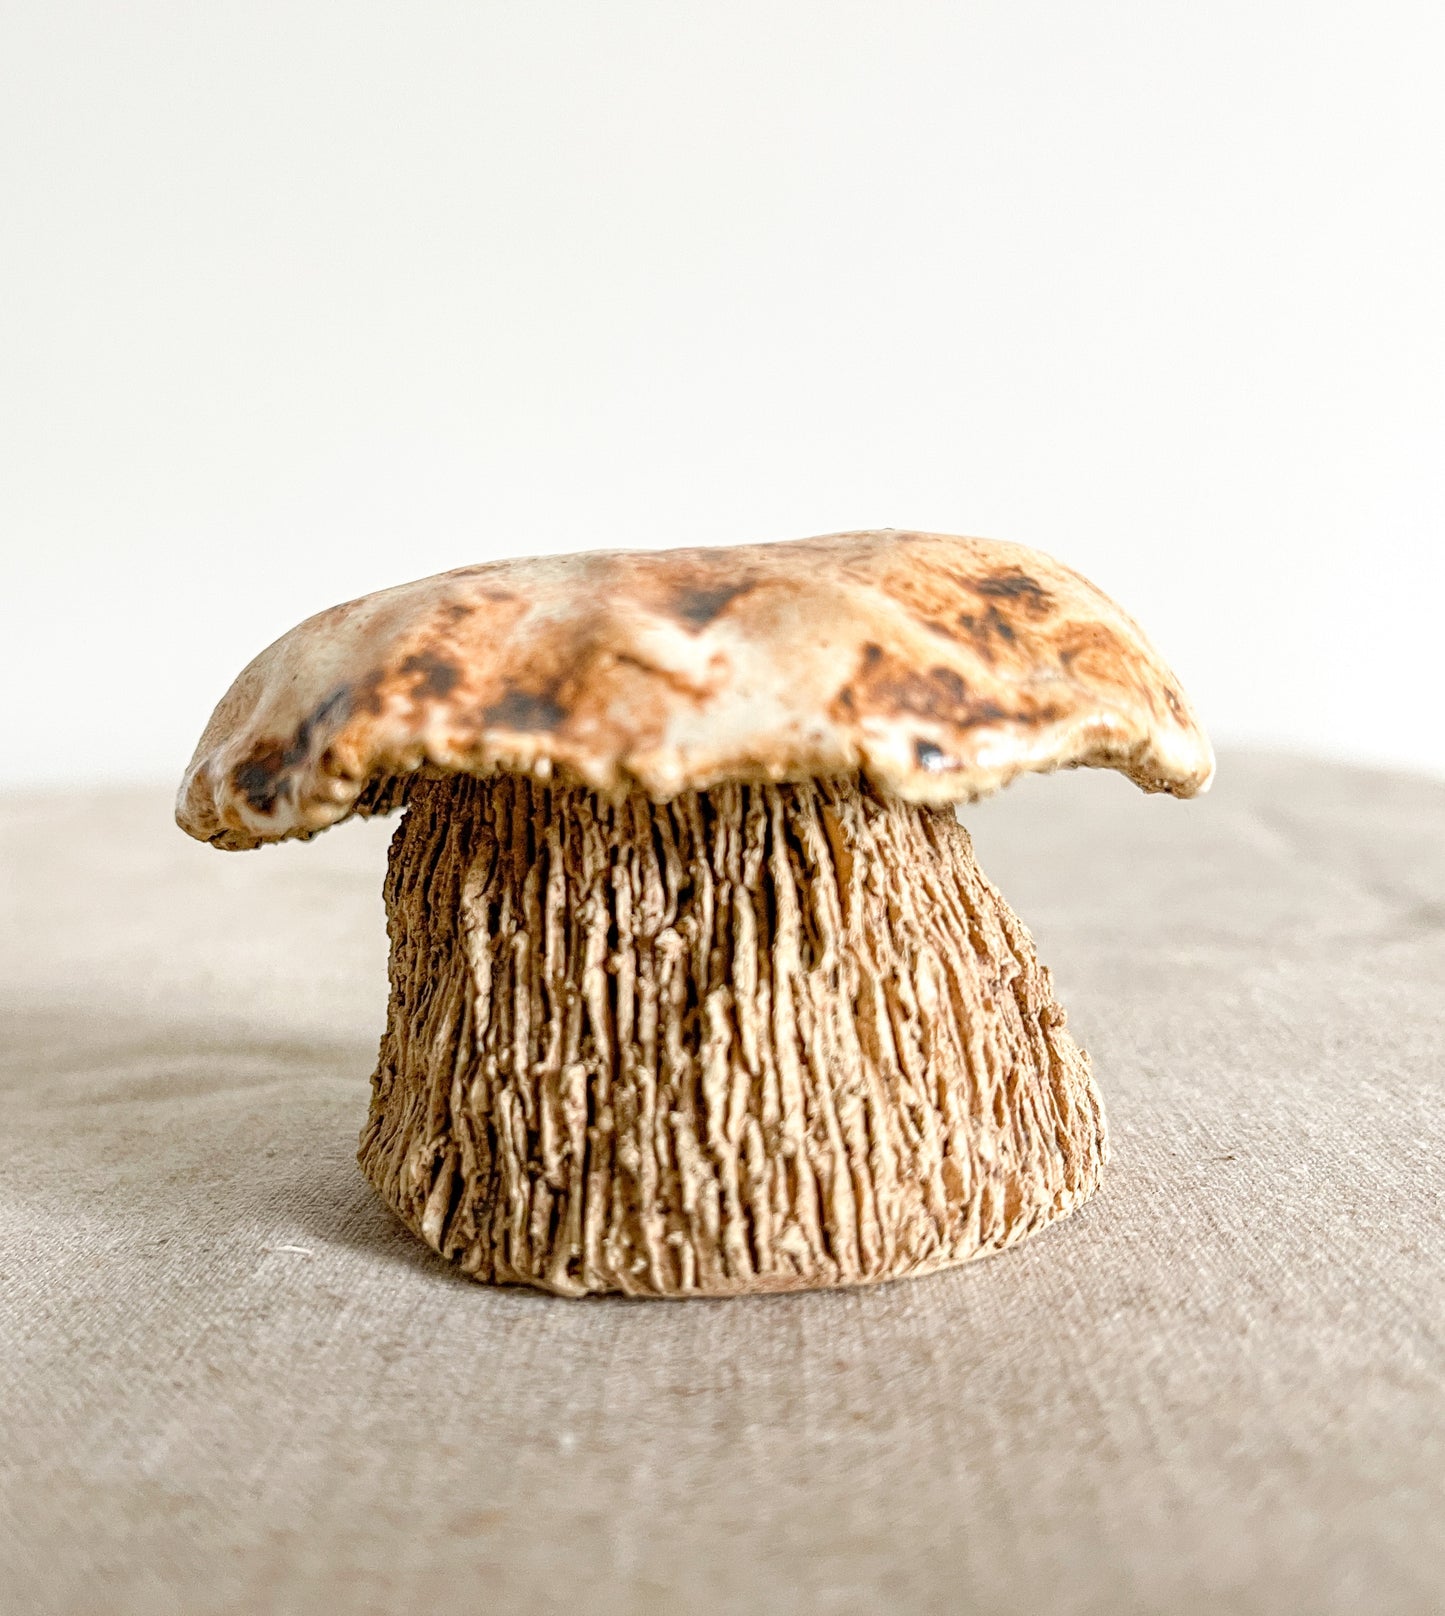 Vintage Mushroom Figurine / Sculpture